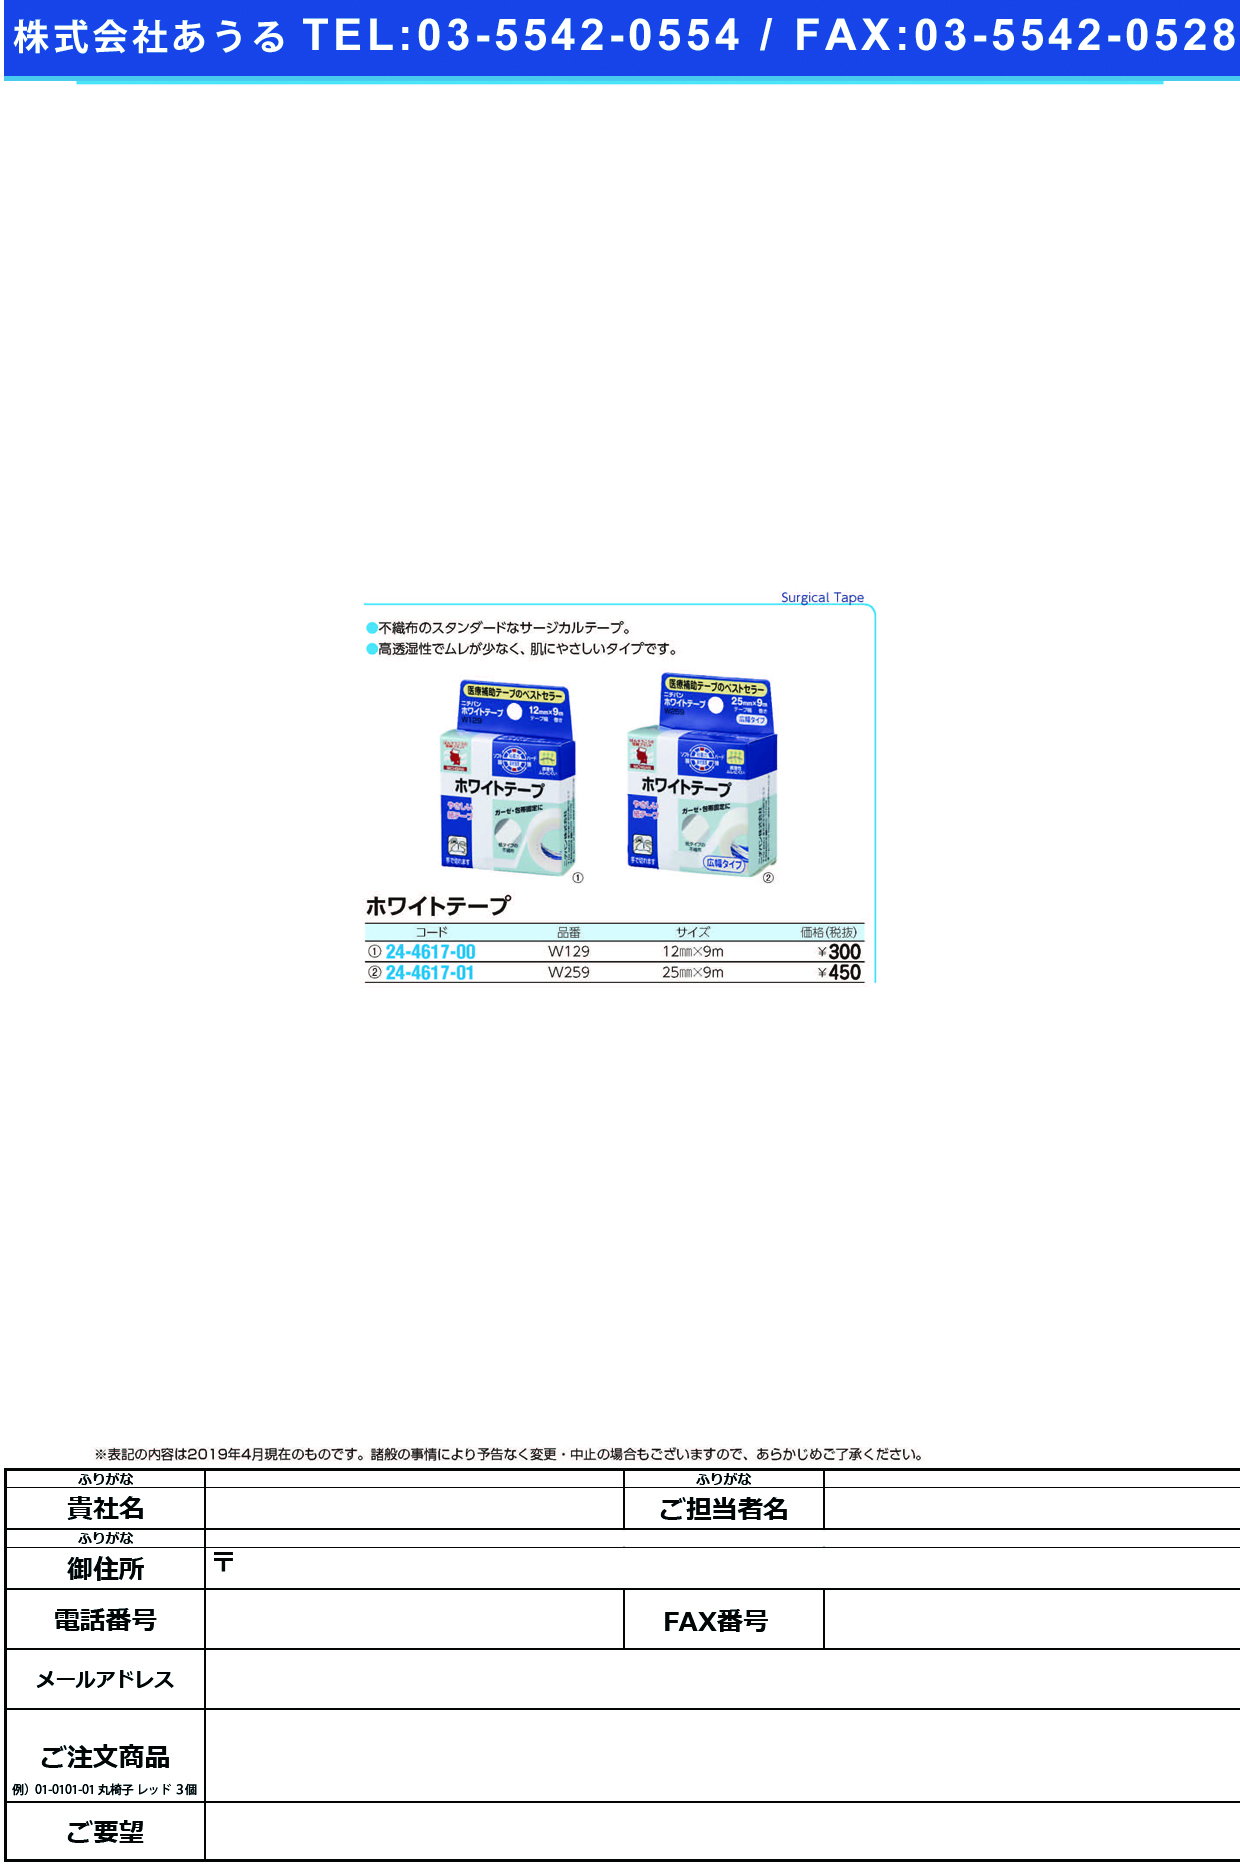 (24-4617-00)ニチバンホワイトテープ W129(12MMX9M) ﾆﾁﾊﾞﾝﾎﾜｲﾄﾃｰﾌﾟ(ニチバン)【1個単位】【2019年カタログ商品】